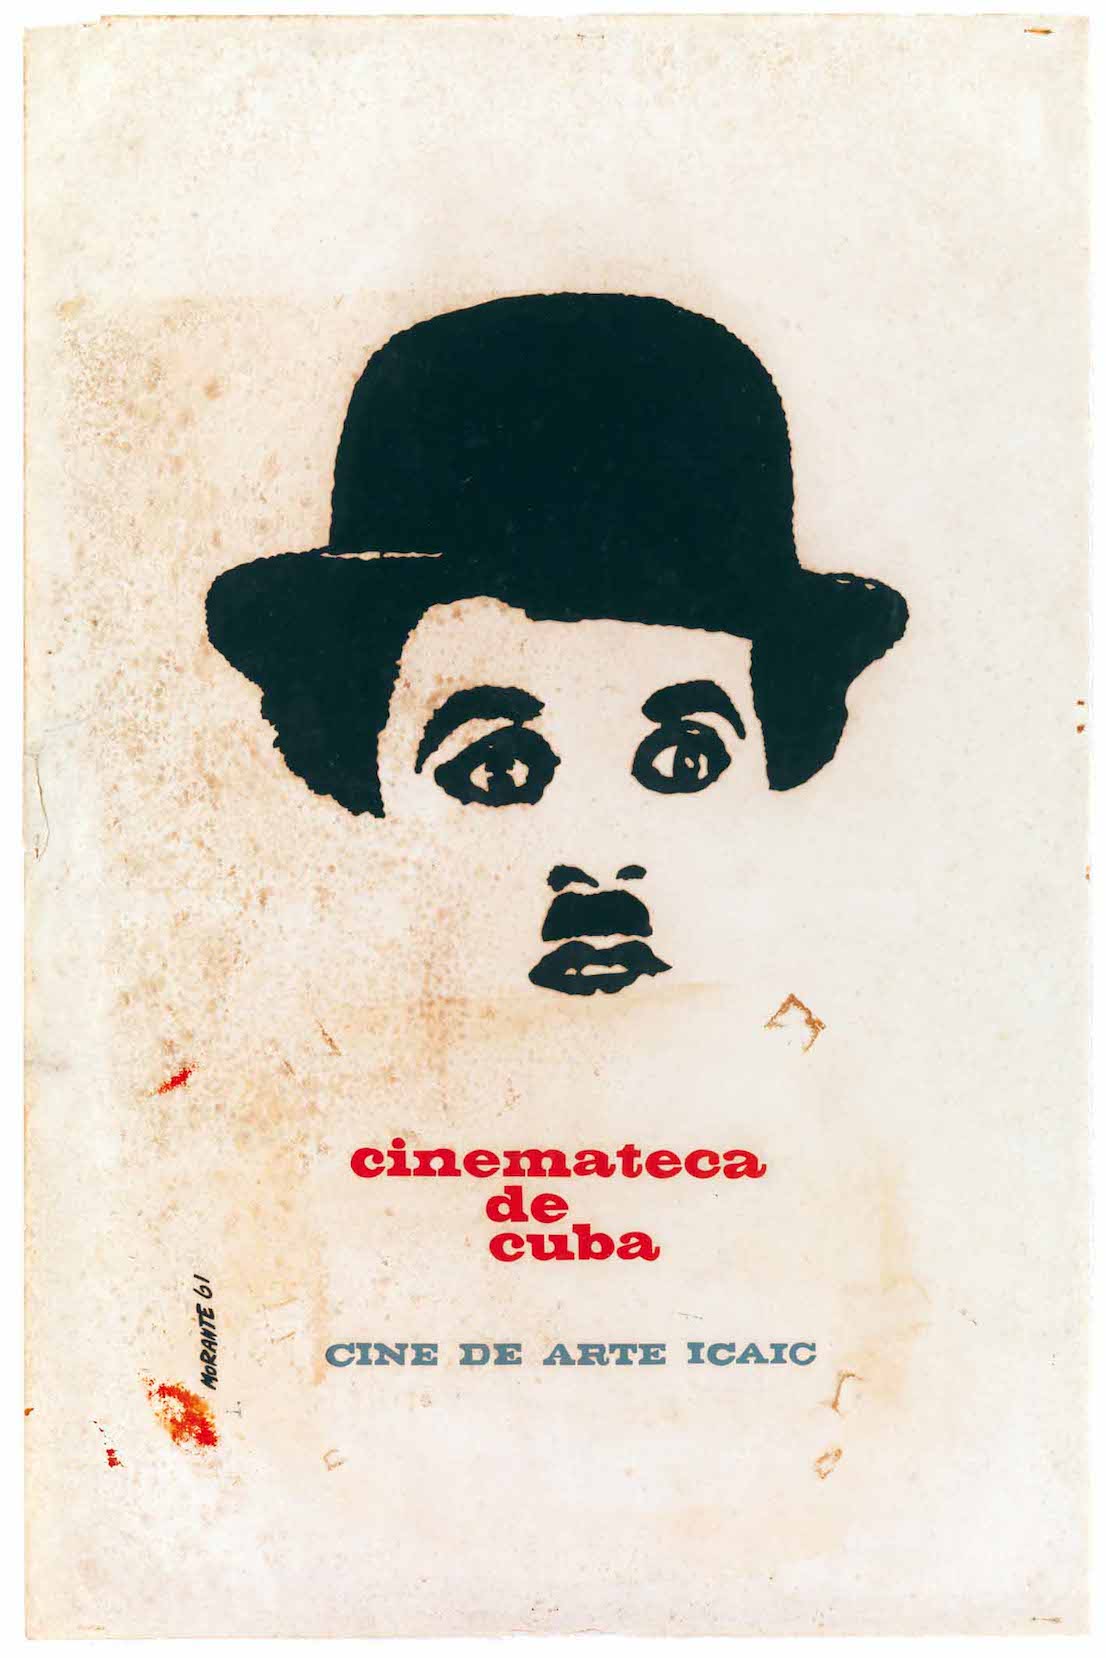 Rafael Morante, Cinemateca de Cuba, 1961.